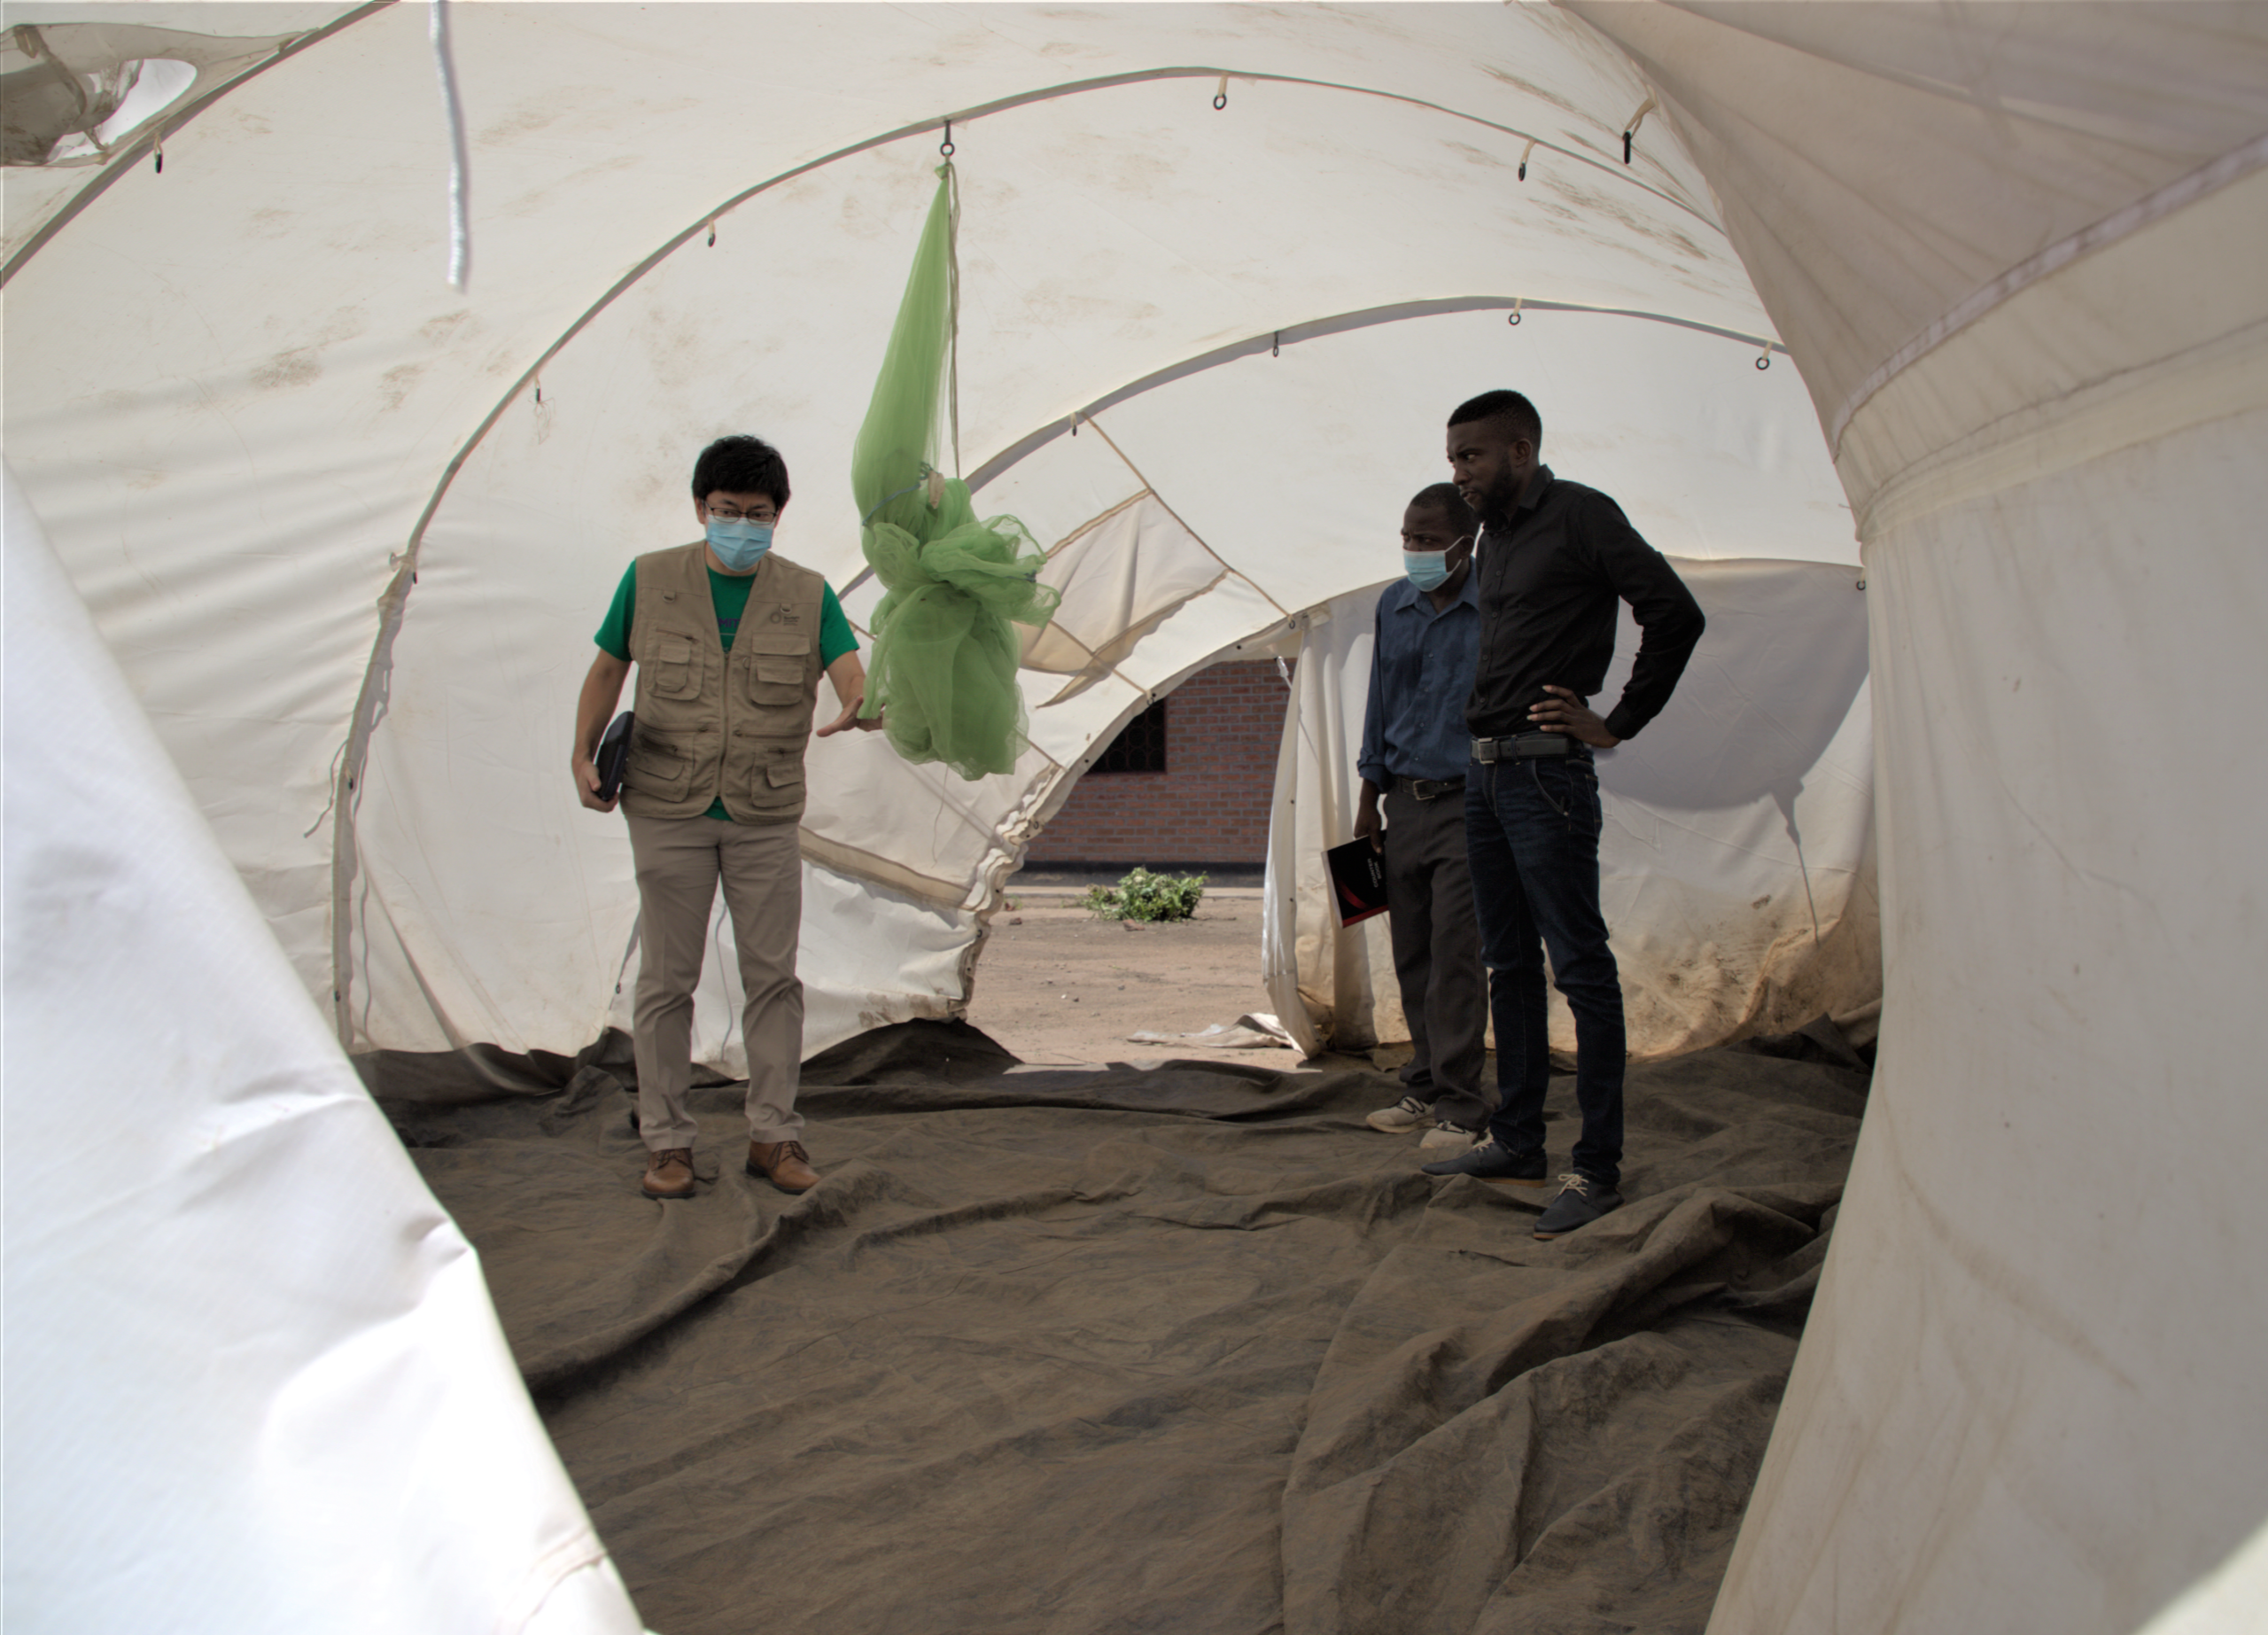 避難民のシェルターとして使用されているテント内部を視察するUNFPAマラウイ事務所副代表の渡部（左）と政府関係者。©UNFPA/Joseph Scott